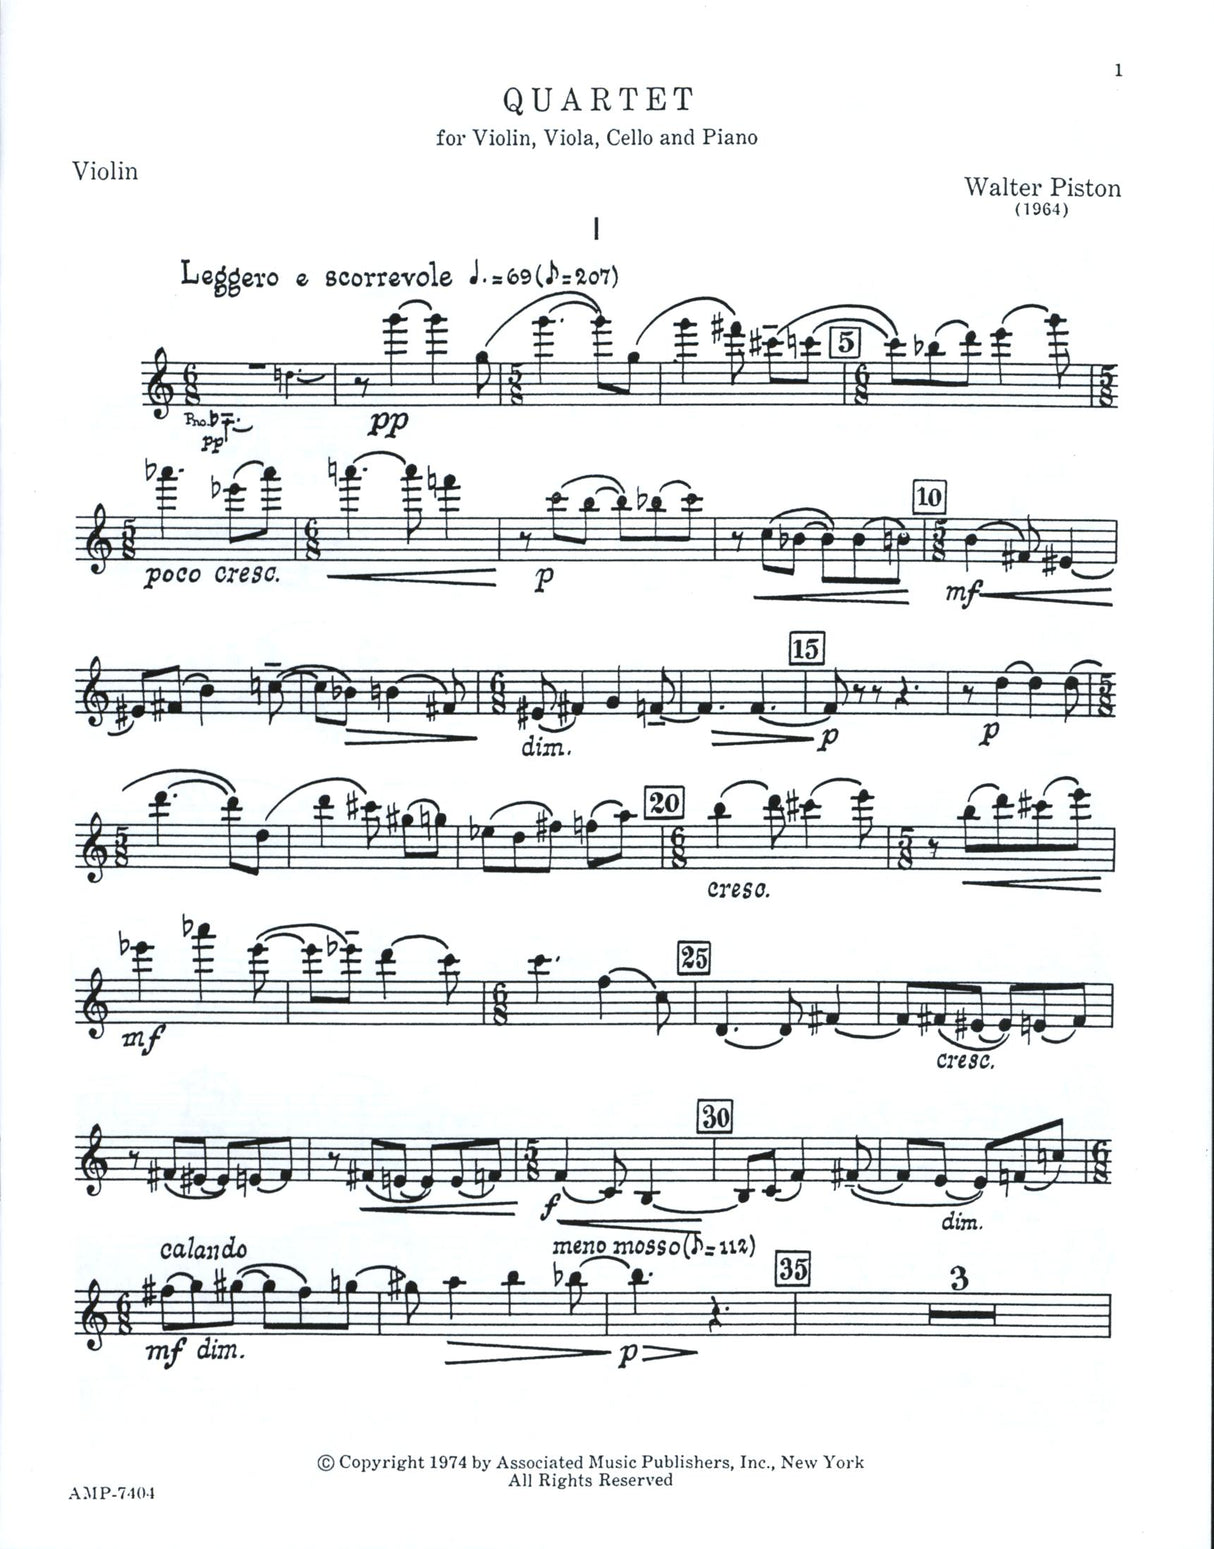 Piston: Piano Quartet